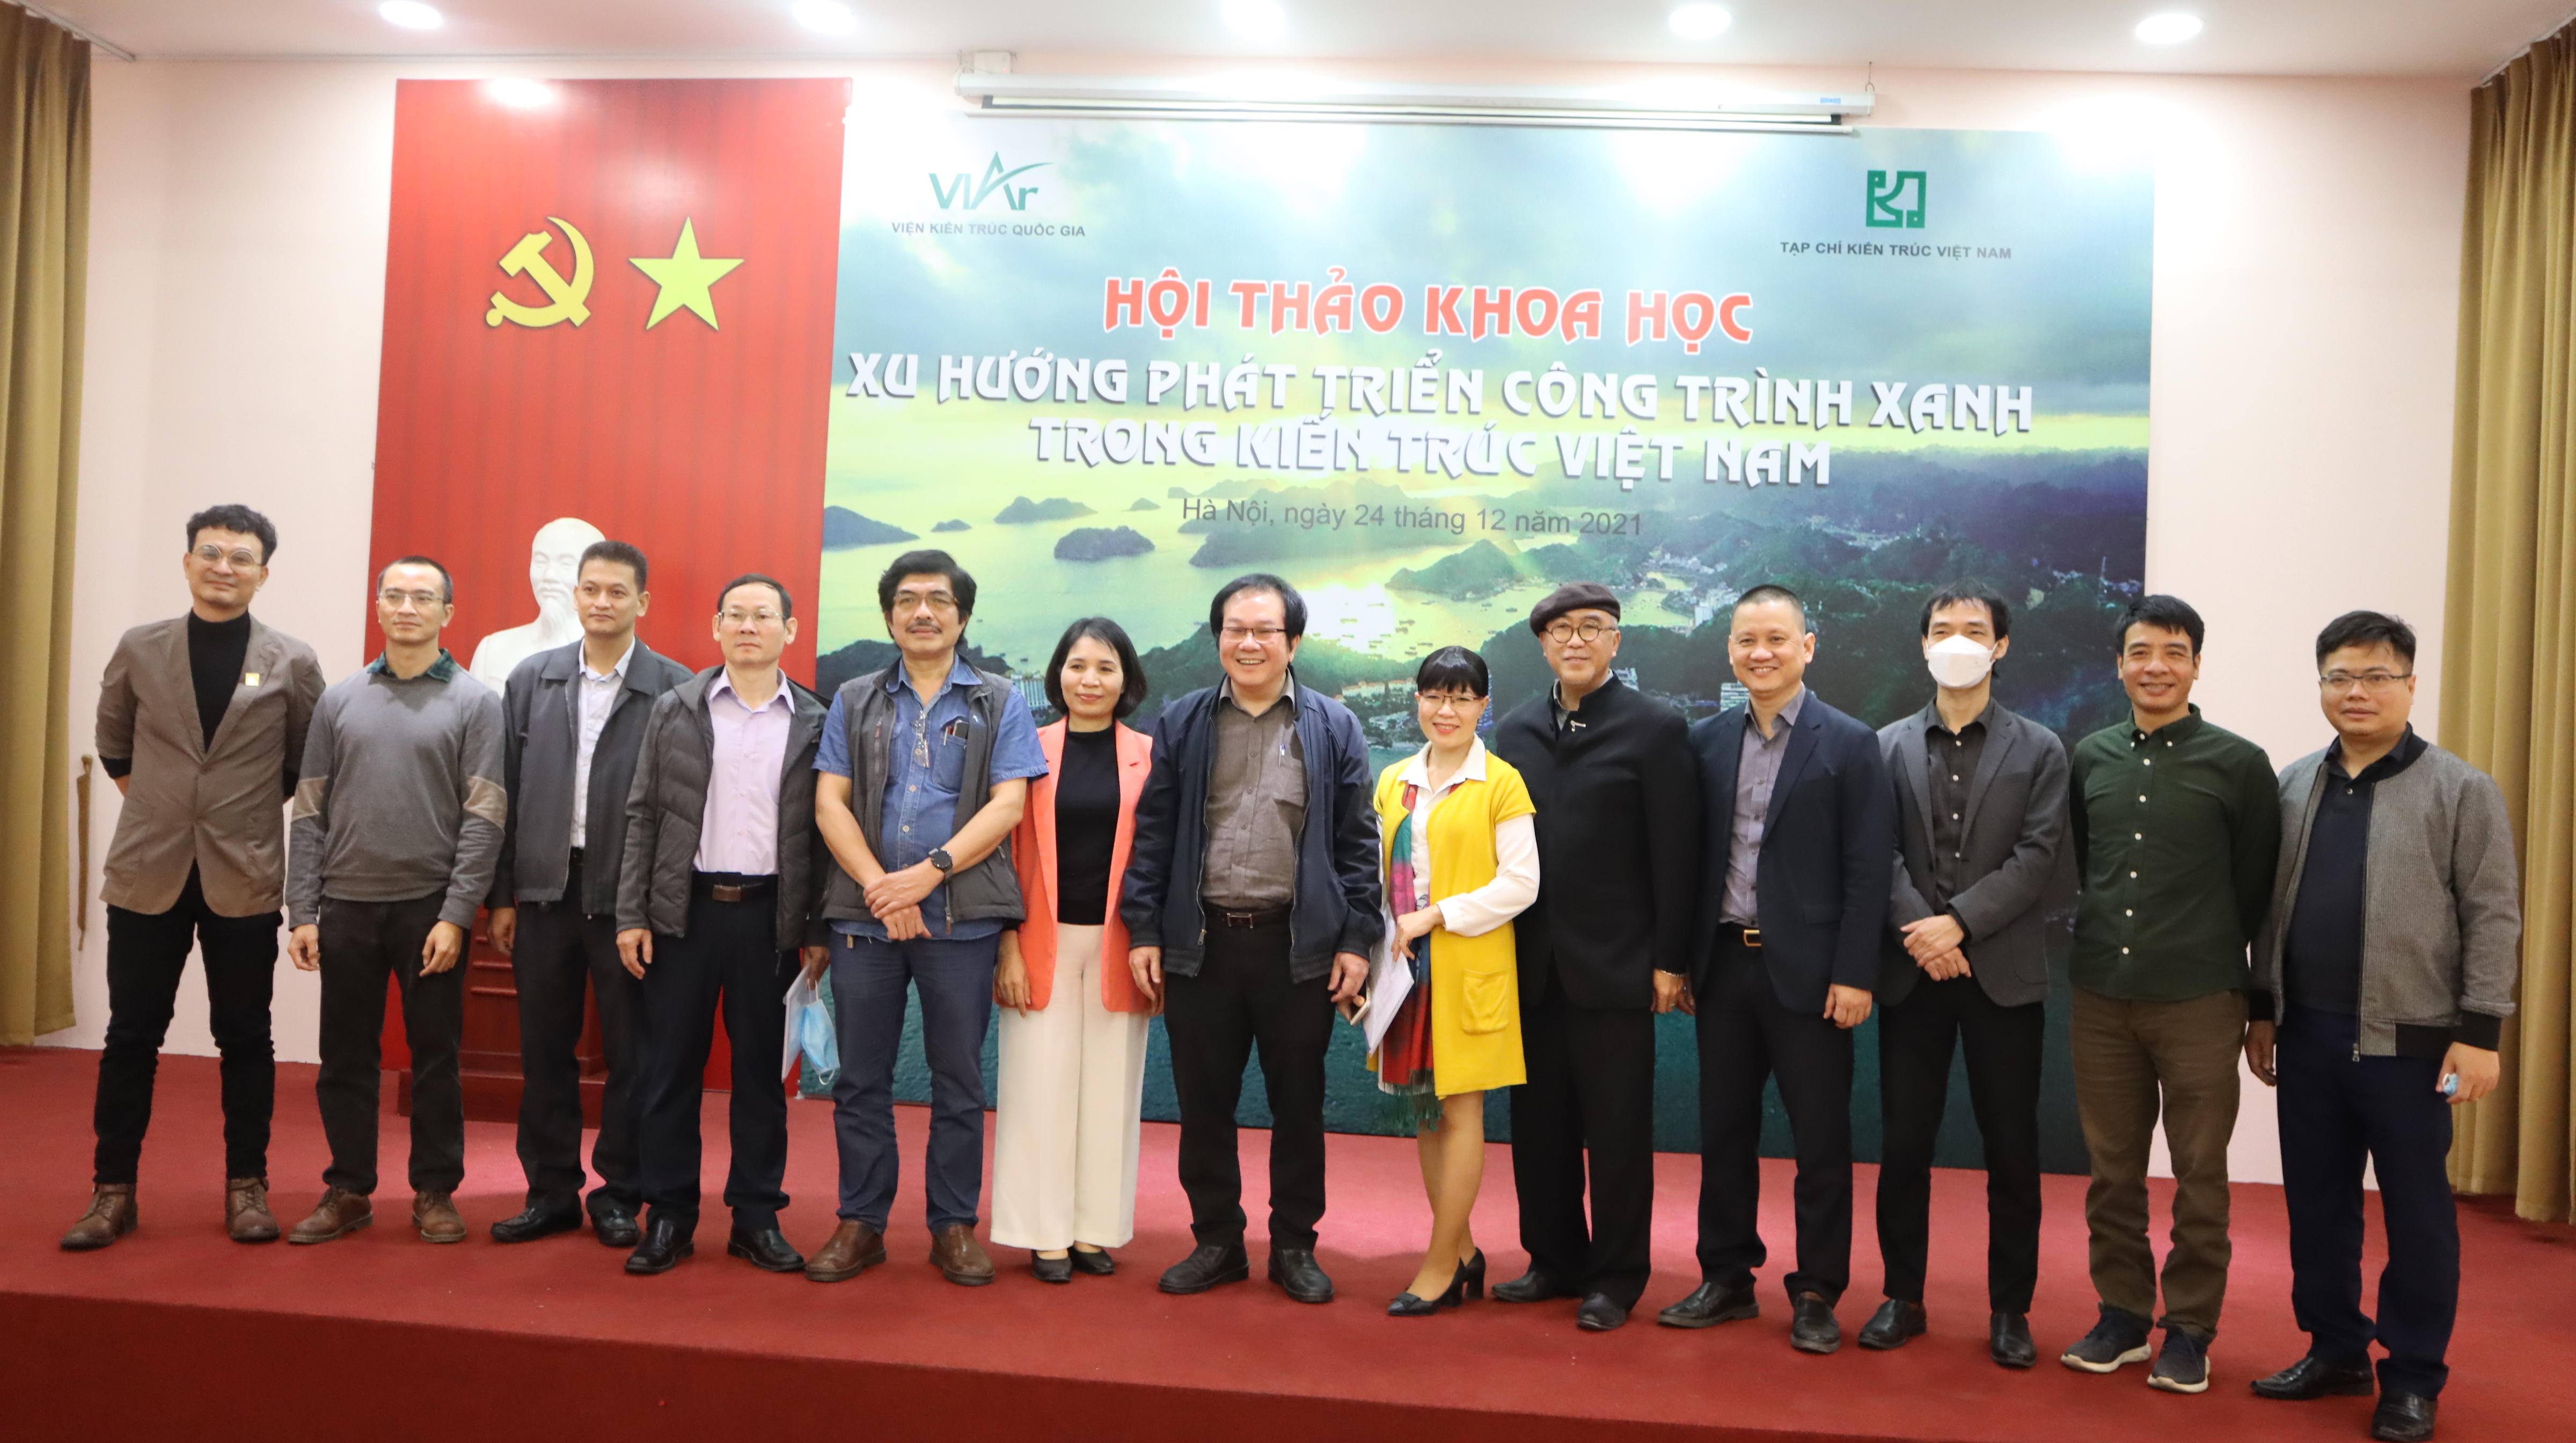 Phát triển công trình xanh – xu hướng tất yếu để xây dựng một nền kiến trúc Việt Nam “xanh” và bền vững